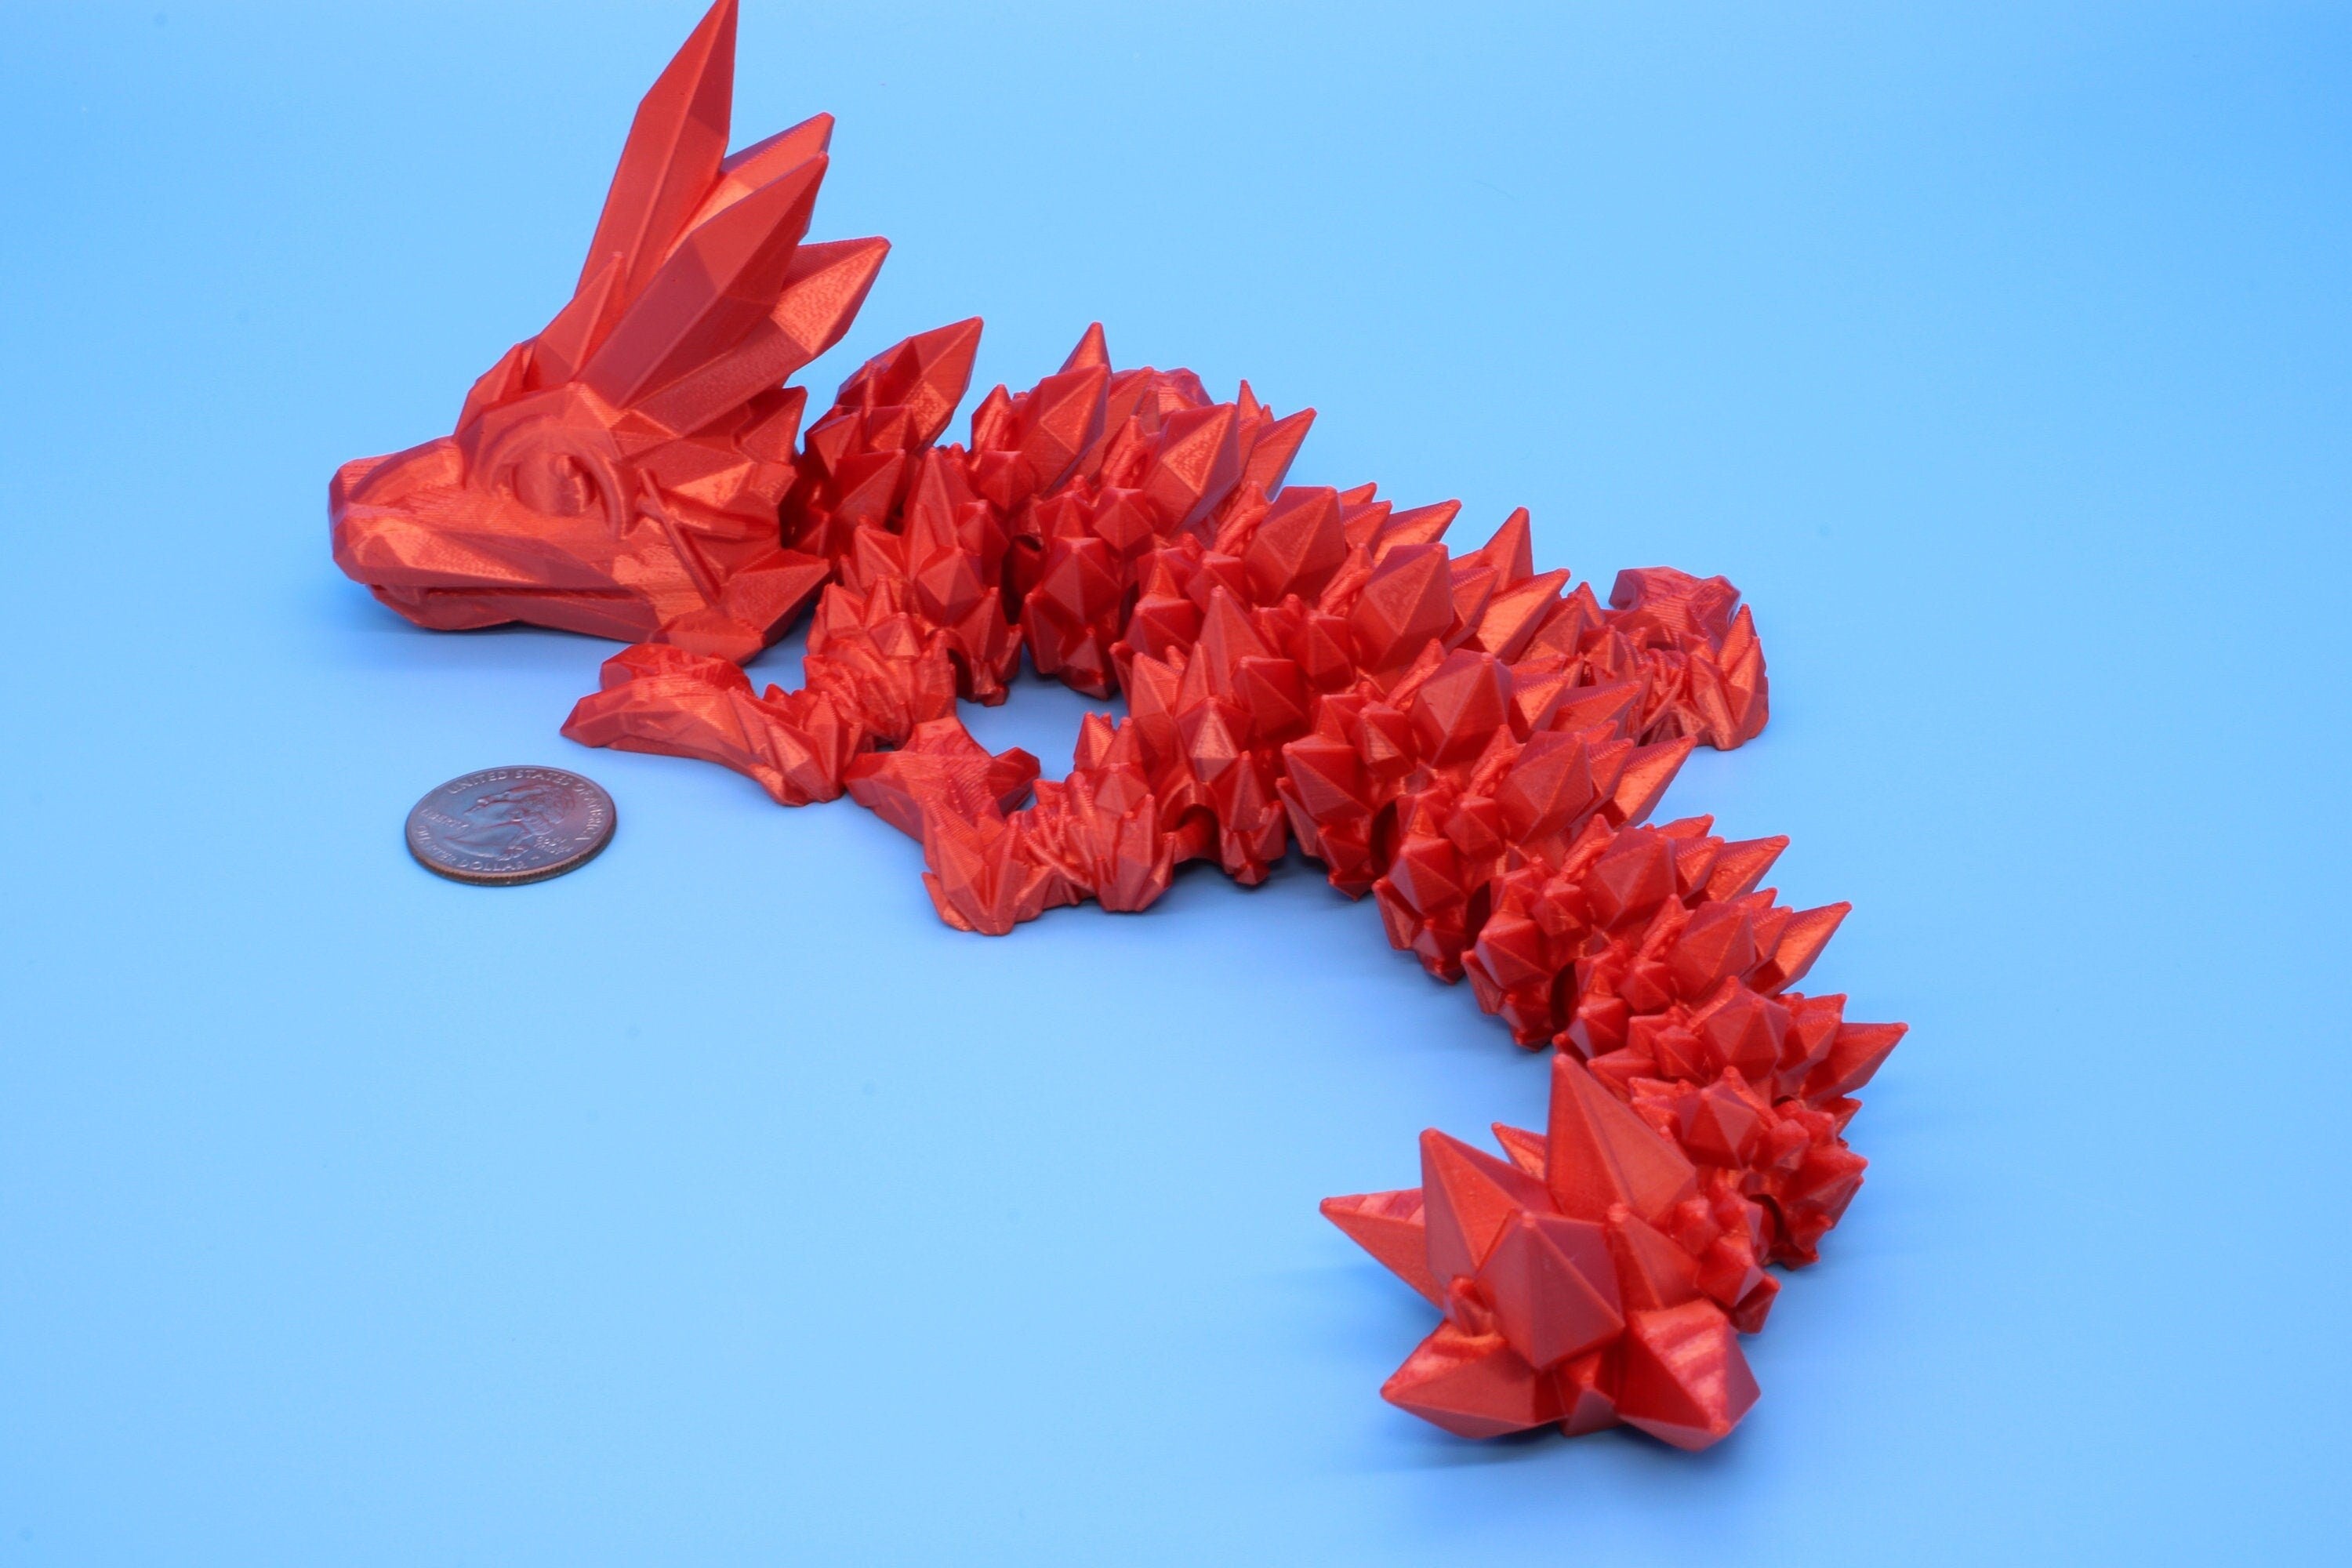 Orange Baby Crystal Dragon | 3D Printed Crystal Dragon | 11.5 inches Dragon Friend | Sensory Toy | Fidget Toy | Flexi Dragon.